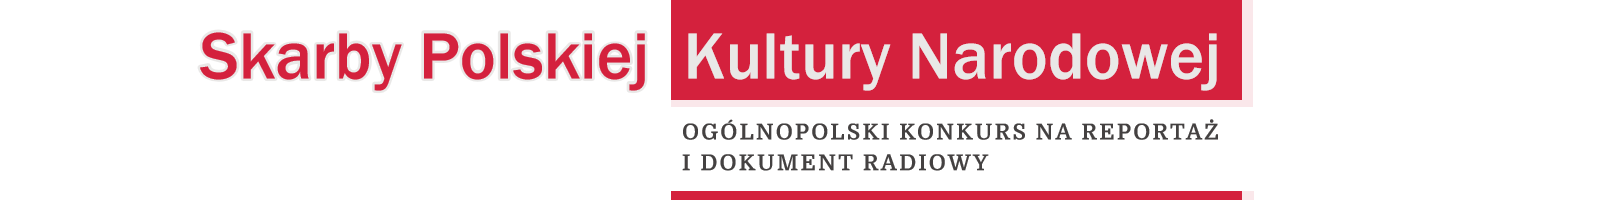 Skarby Polskiej Kultury Narodowej | Zgłoszenie Radio Zachód - Lubuskie